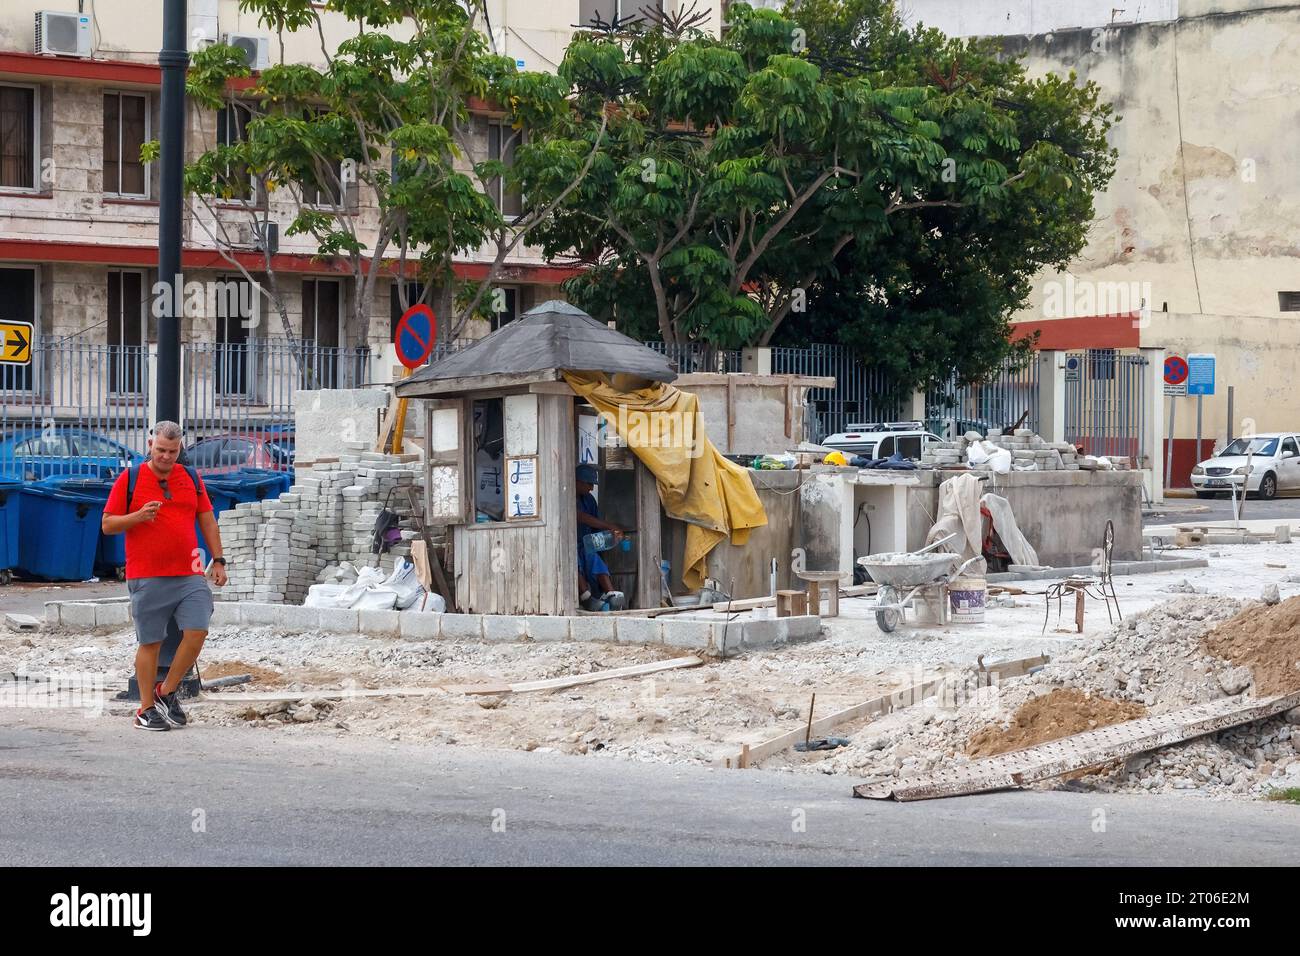 Un cubain marche dans une rue de la ville. À droite, un bâtiment effondré est en cours de reconstruction. Il y a une cabine de sécurité rustique dans le coin Banque D'Images